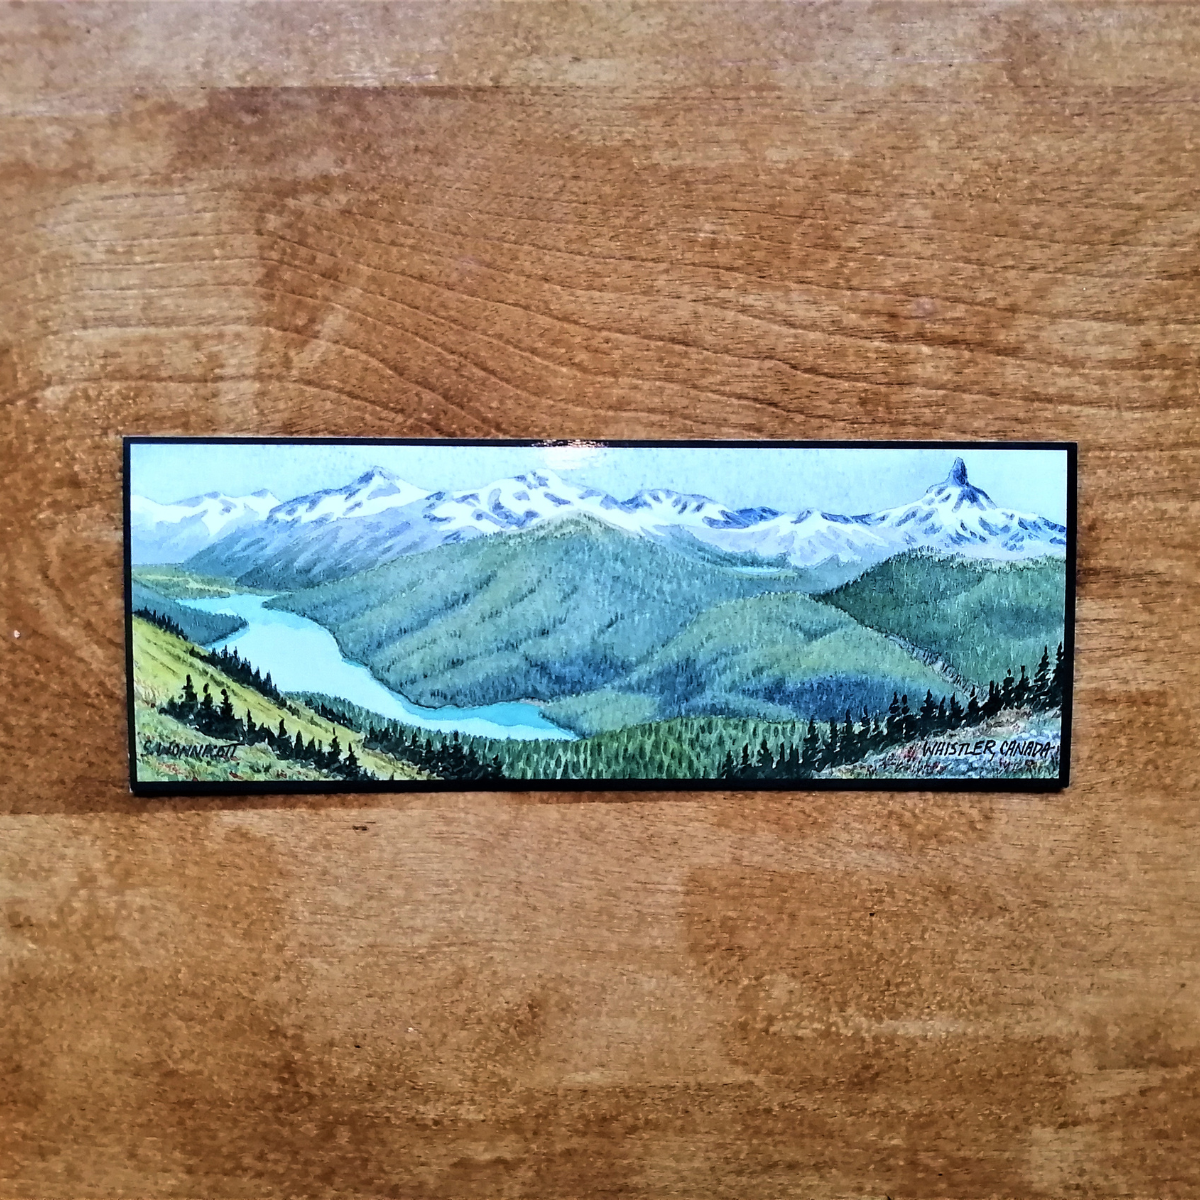 Bookmark - Black Tusk & Cheakamus Lake by Shelly Wonnacott-Card-Shelly Wonnacott-[made in bc]-[whistler artist]-[whistler memory]-All The Good Things From BC